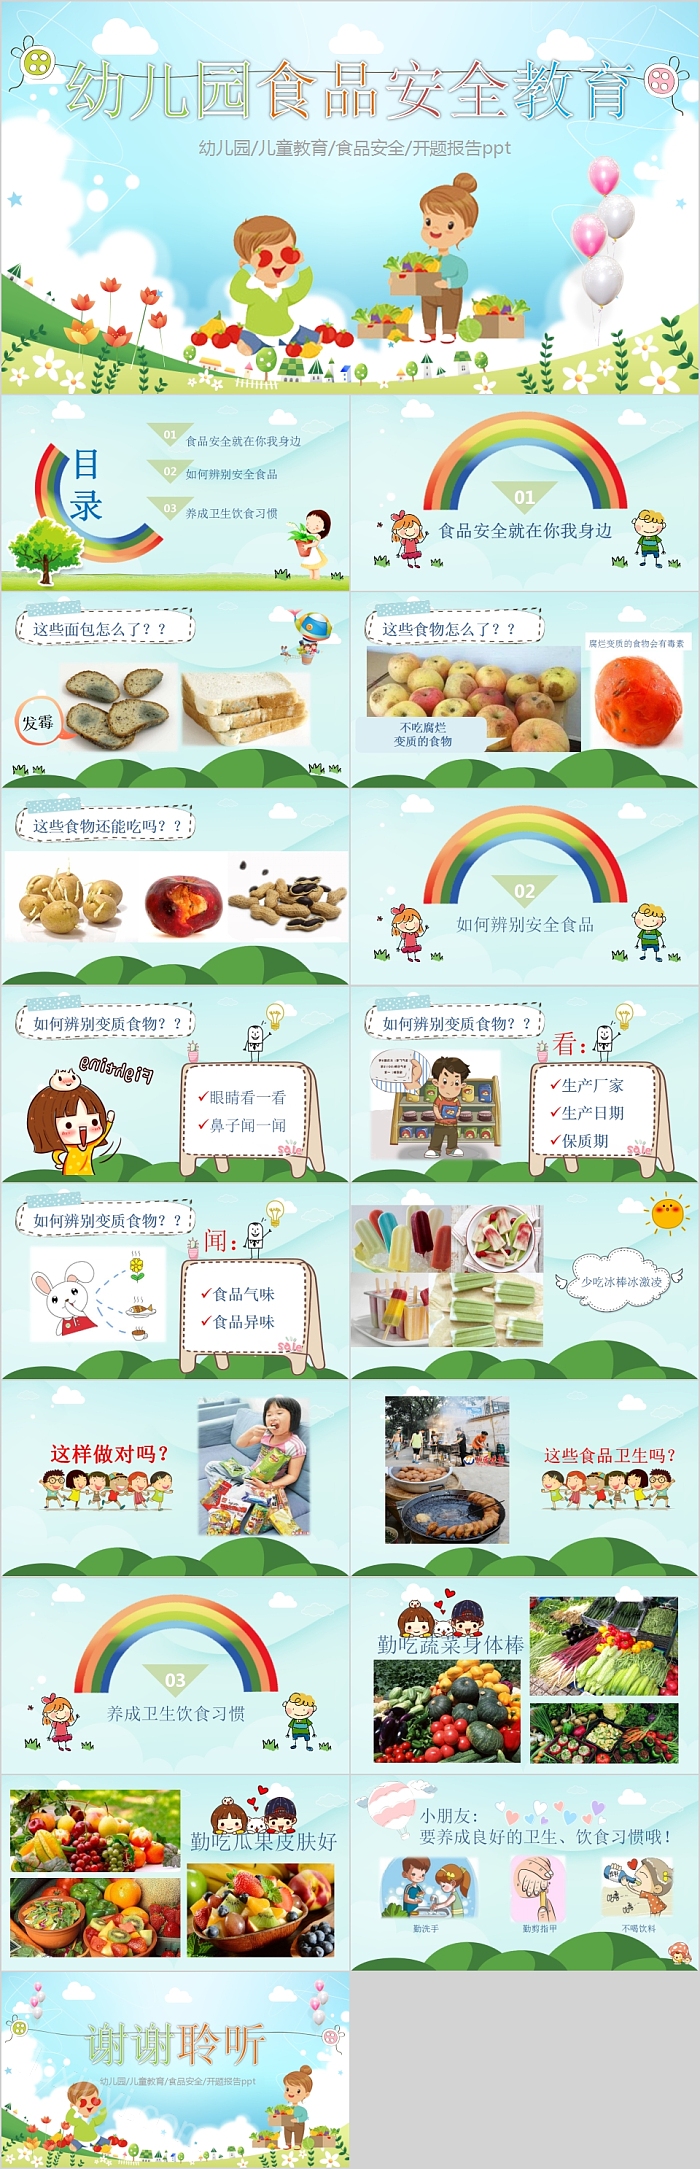 简约清新幼儿园食品安全教育PPT